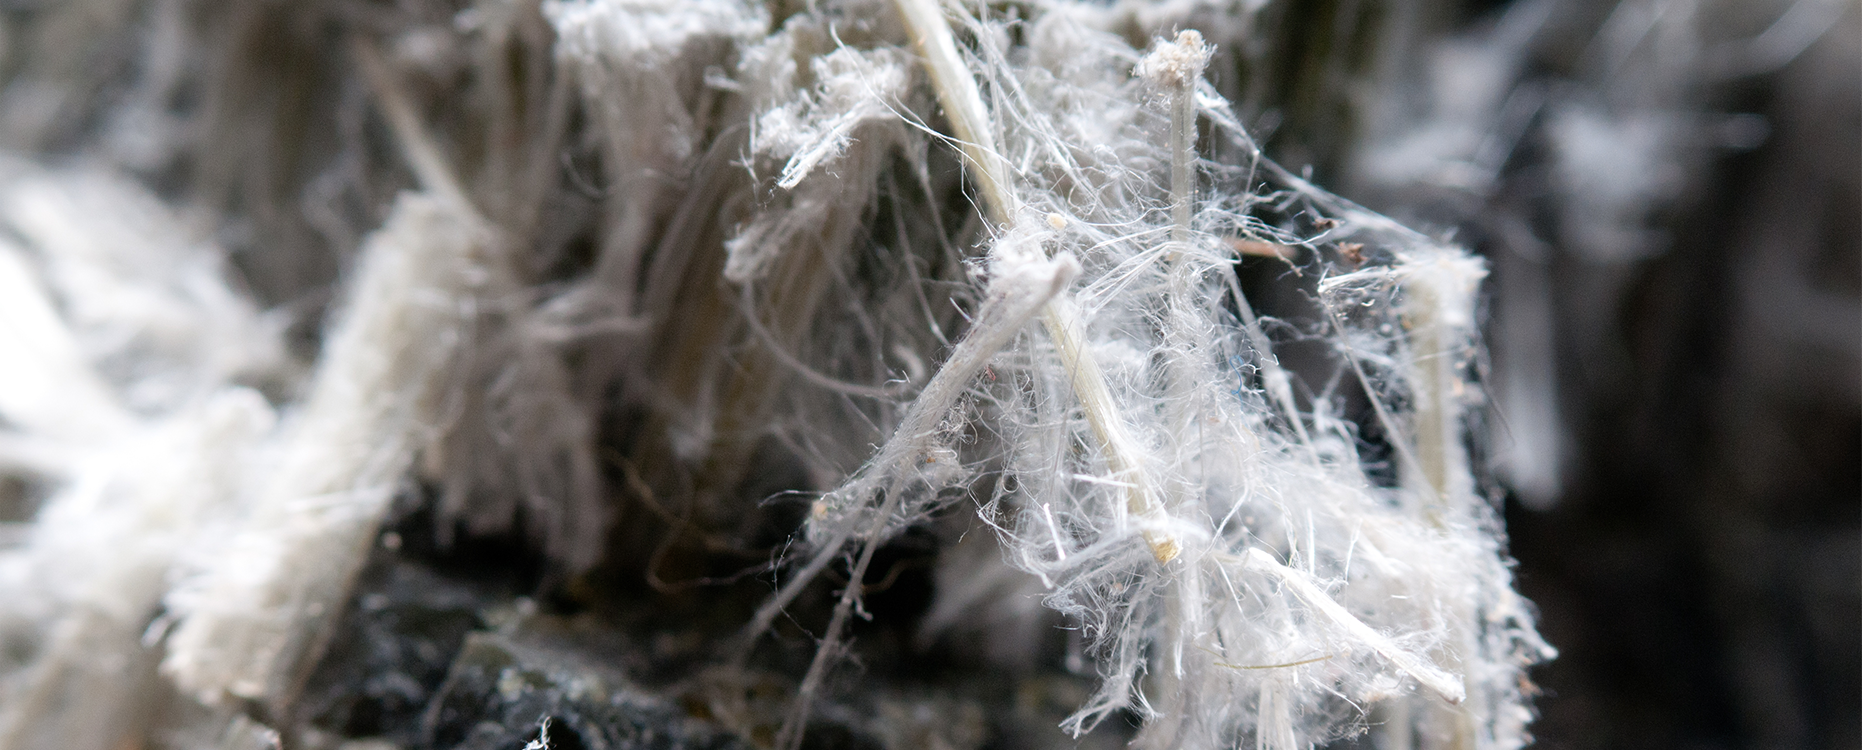 Close up of asbestos